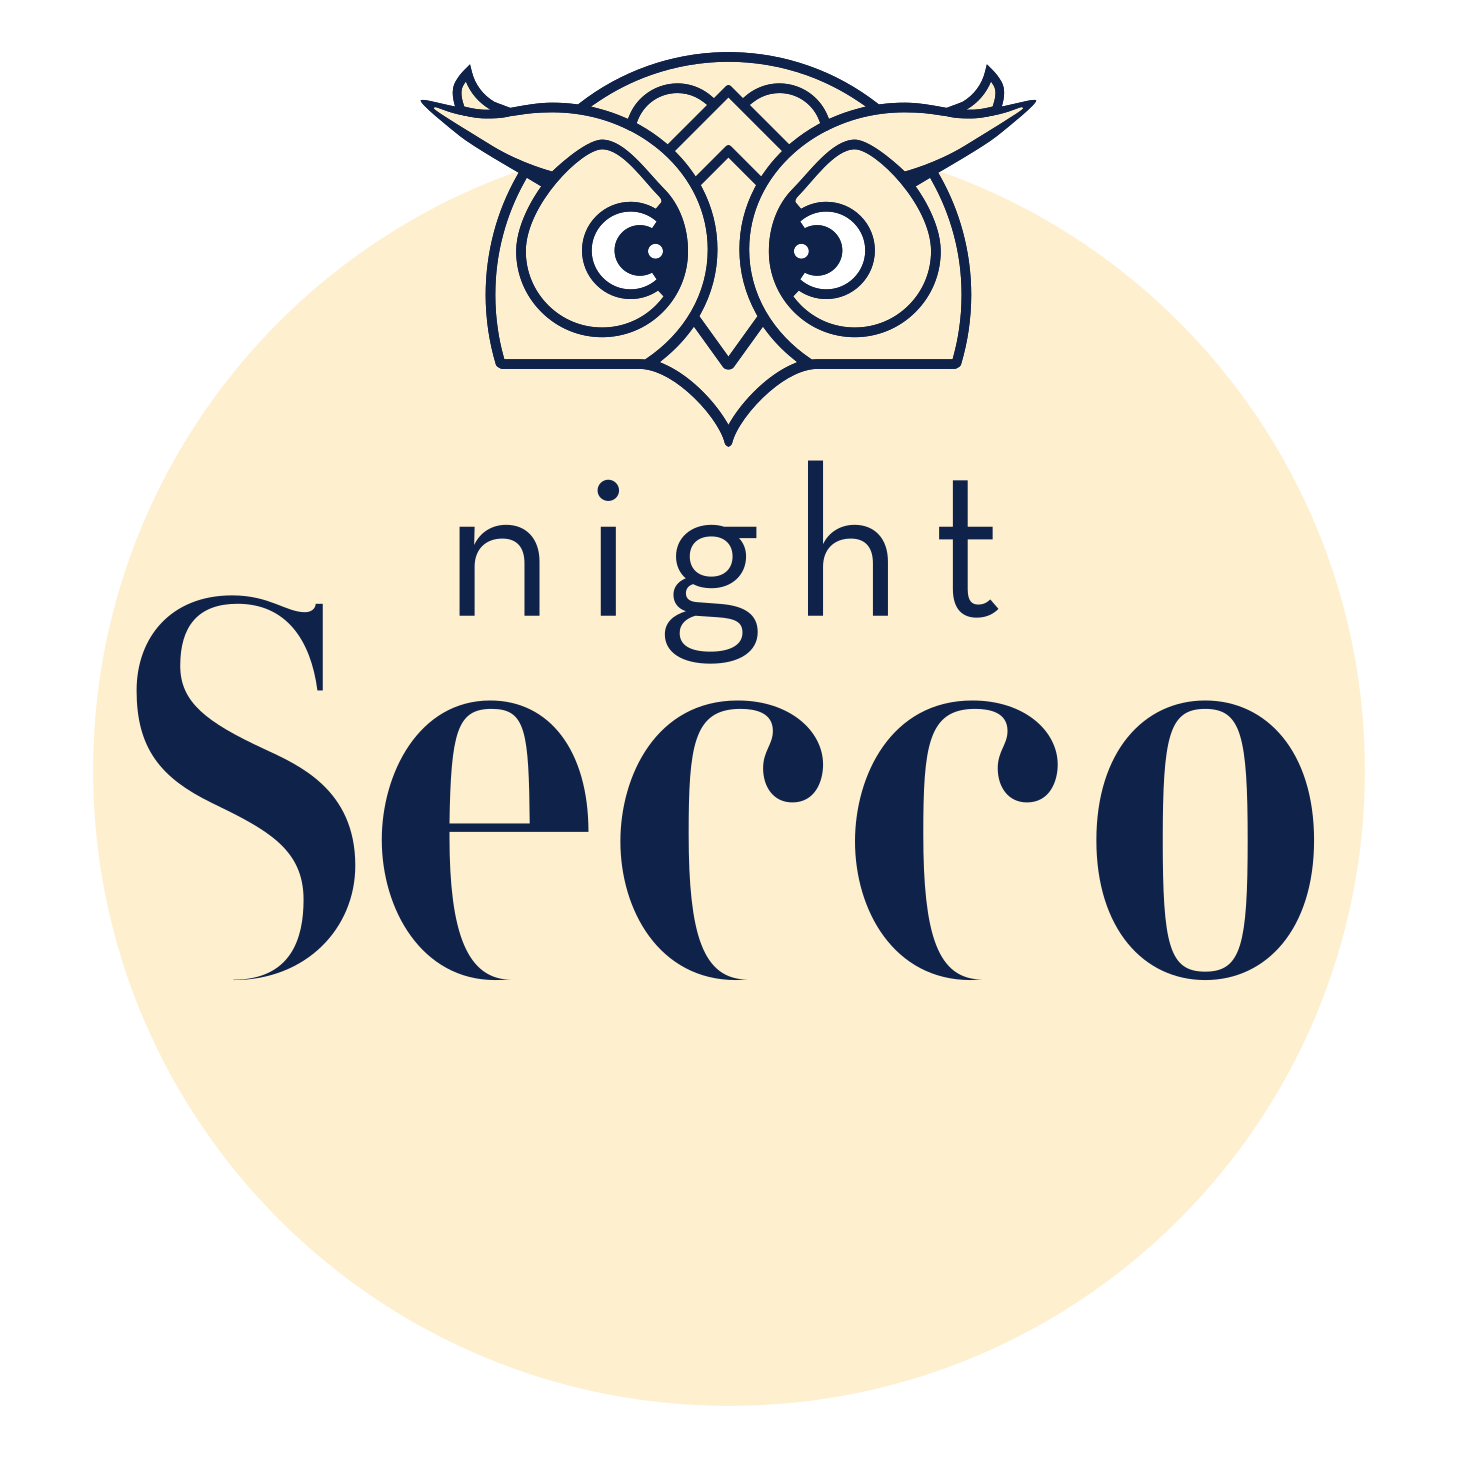 Night Secco